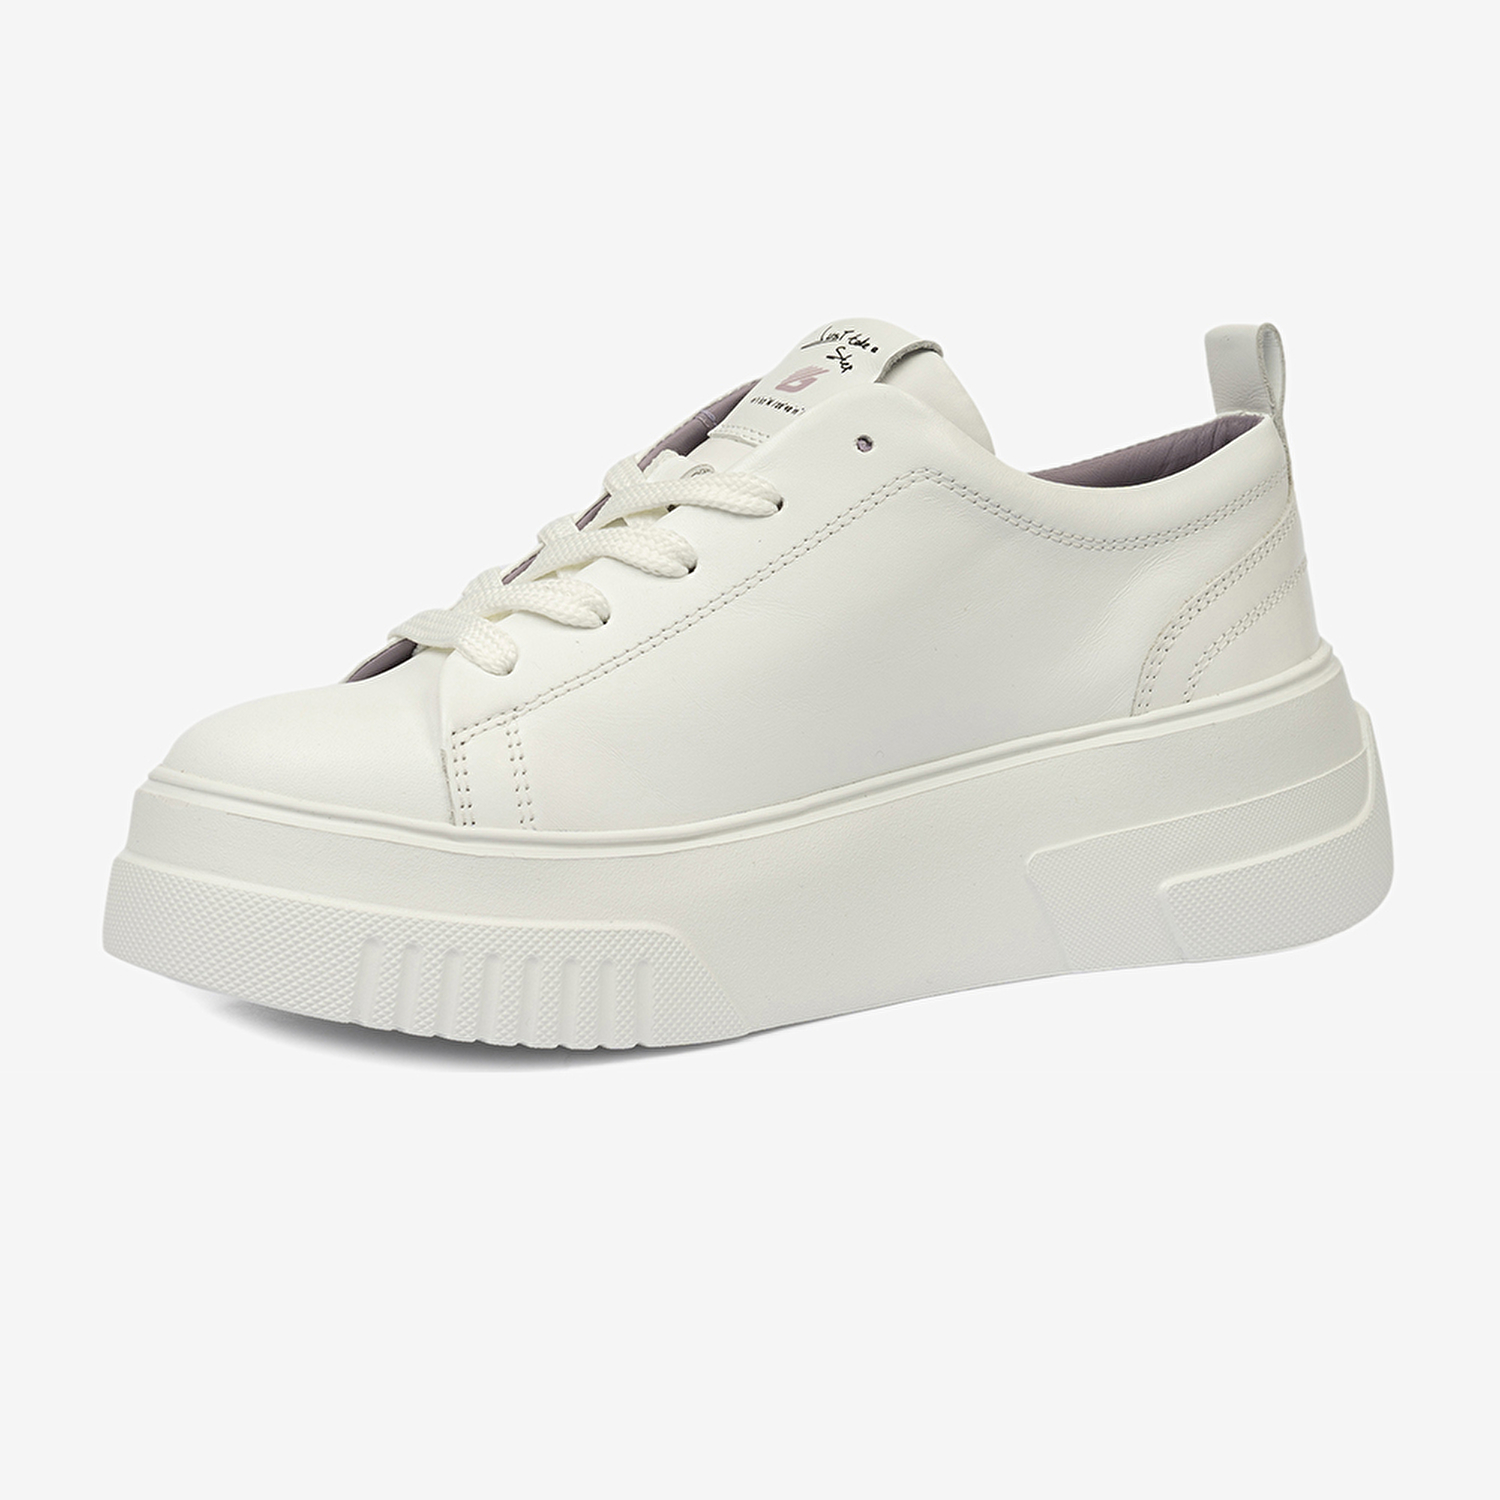 Kadın Beyaz Hakiki Deri Sneaker Ayakkabı 4Y2SA33710-3